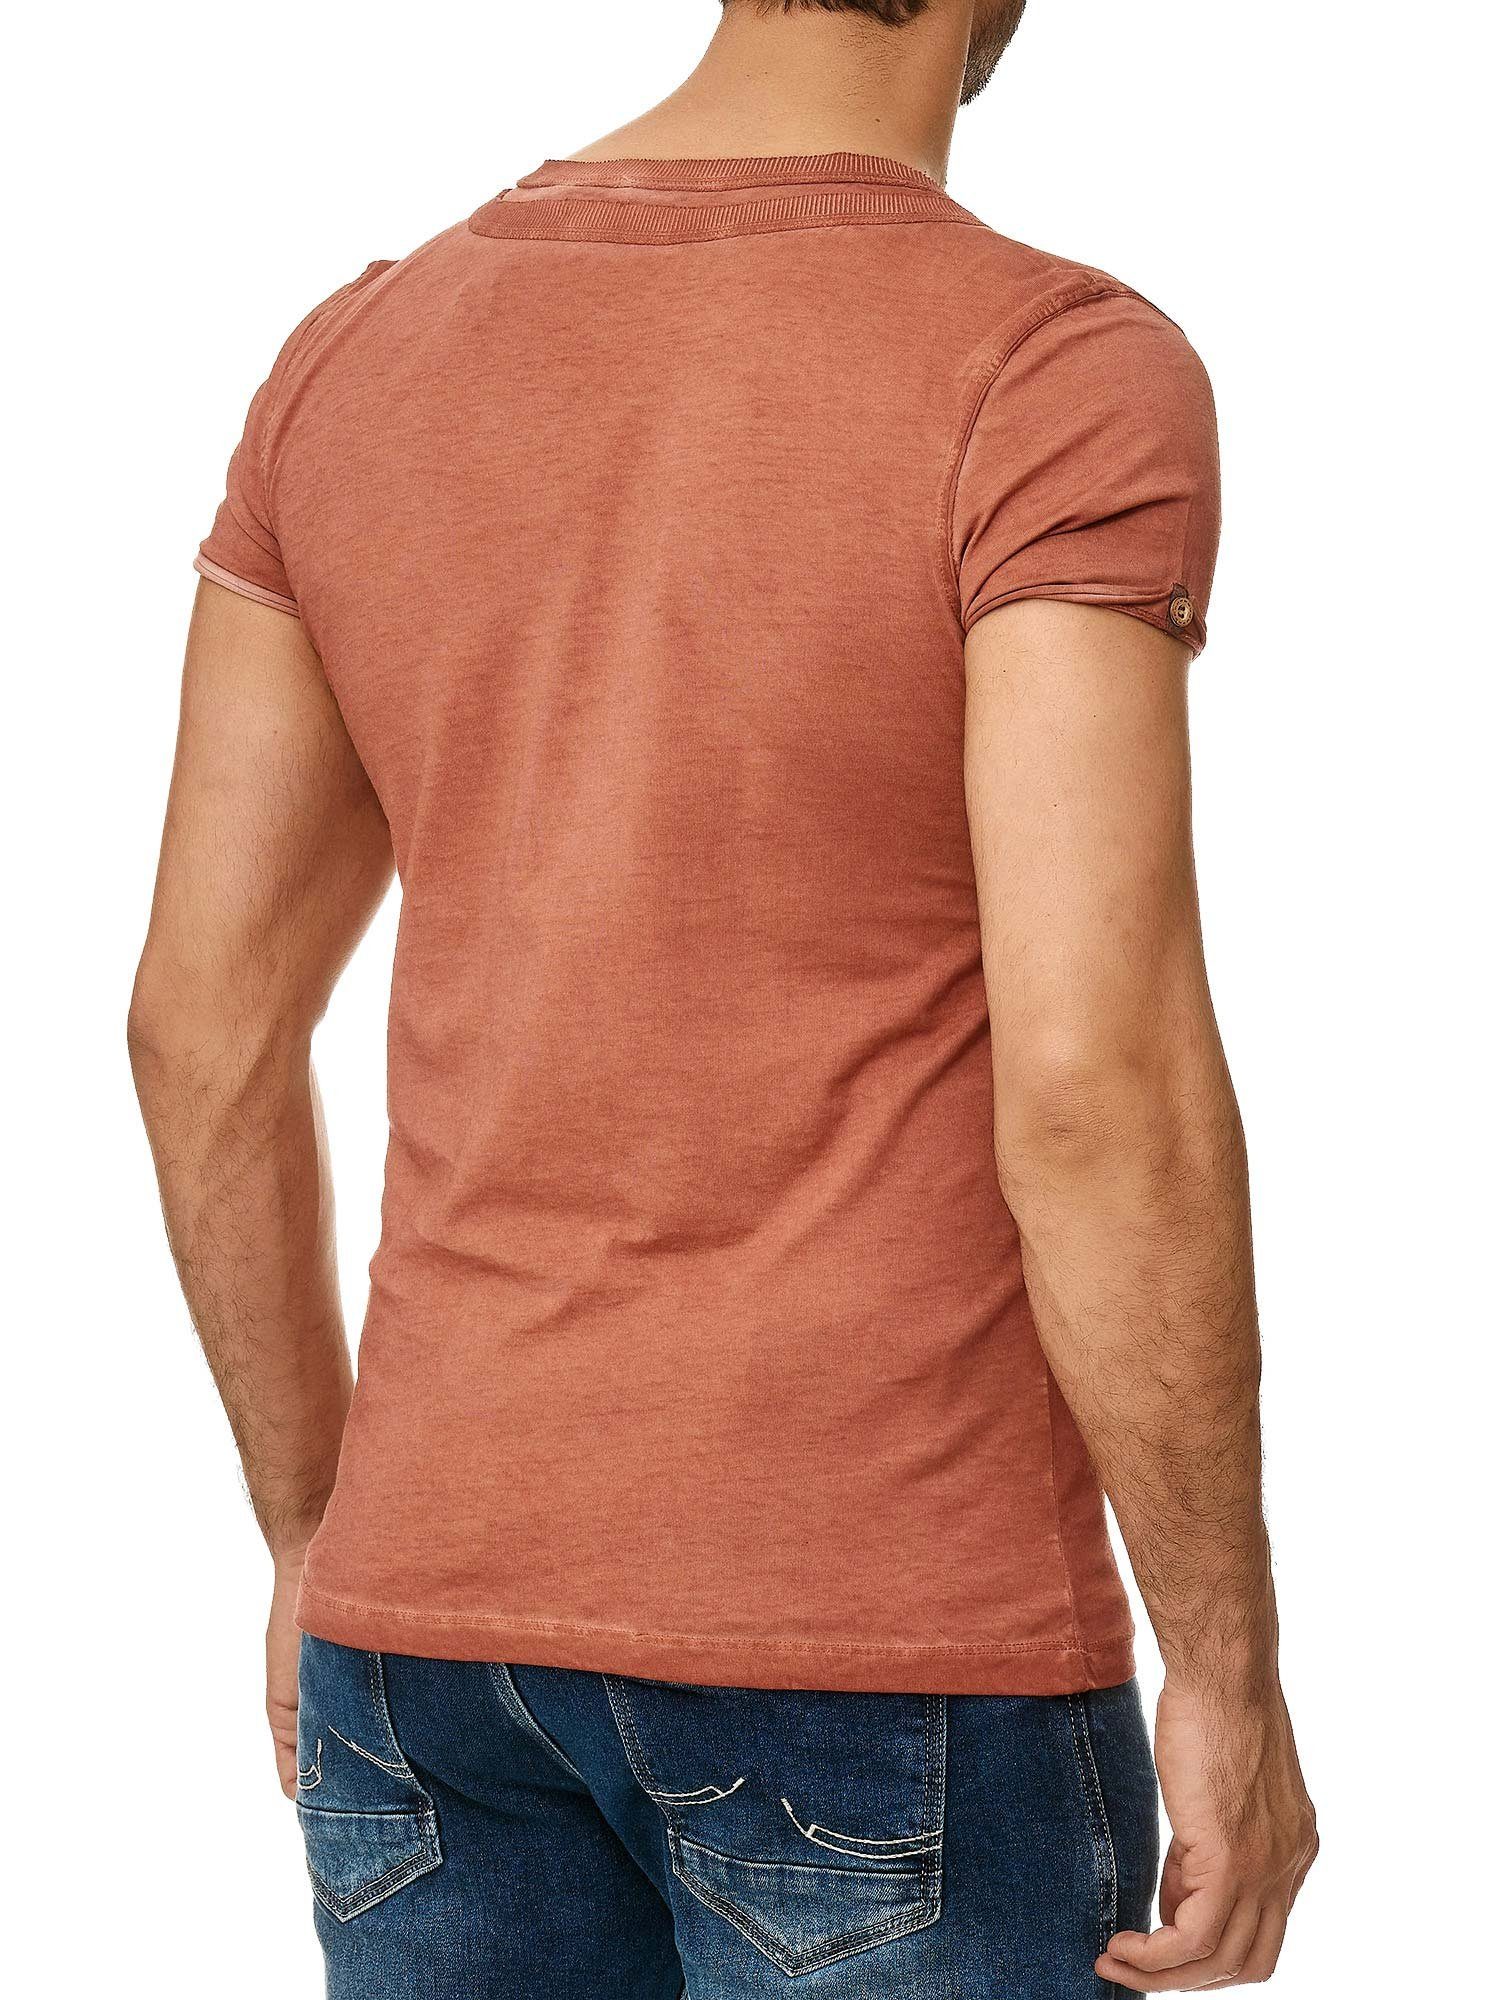 Knopfleiste T-Shirt in trendiger mit bordeaux Schulter Kragen der an 4022 Ölwaschung Tazzio stylischem und